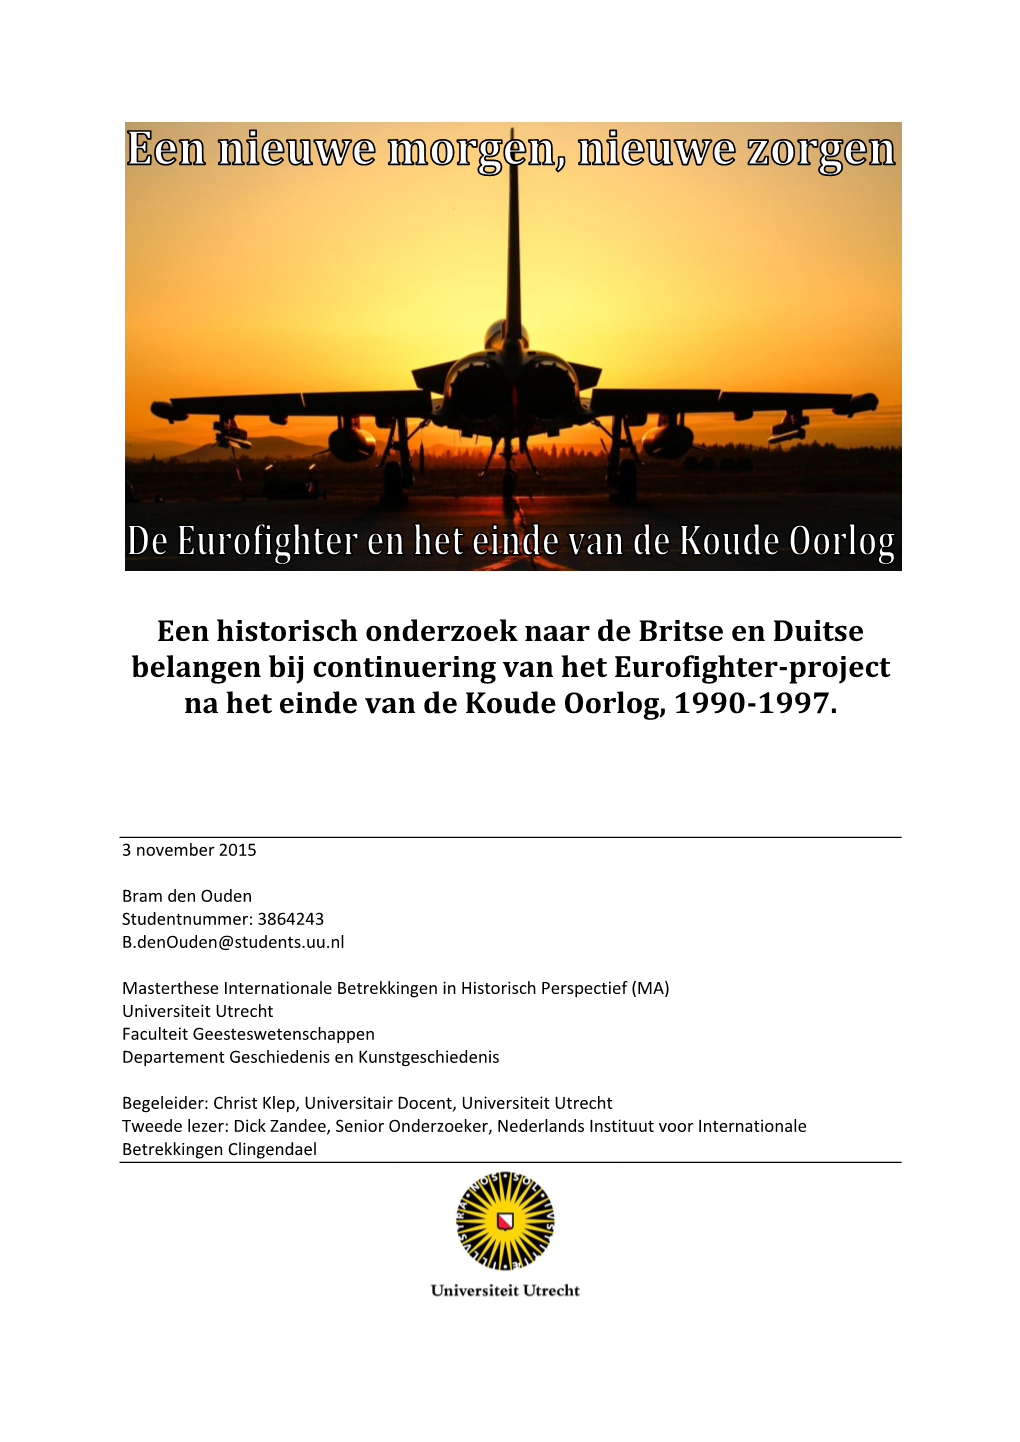 Een Historisch Onderzoek Naar De Britse En Duitse Belangen Bij Continuering Van Het Eurofighter-Project Na Het Einde Van De Koude Oorlog, 1990-1997